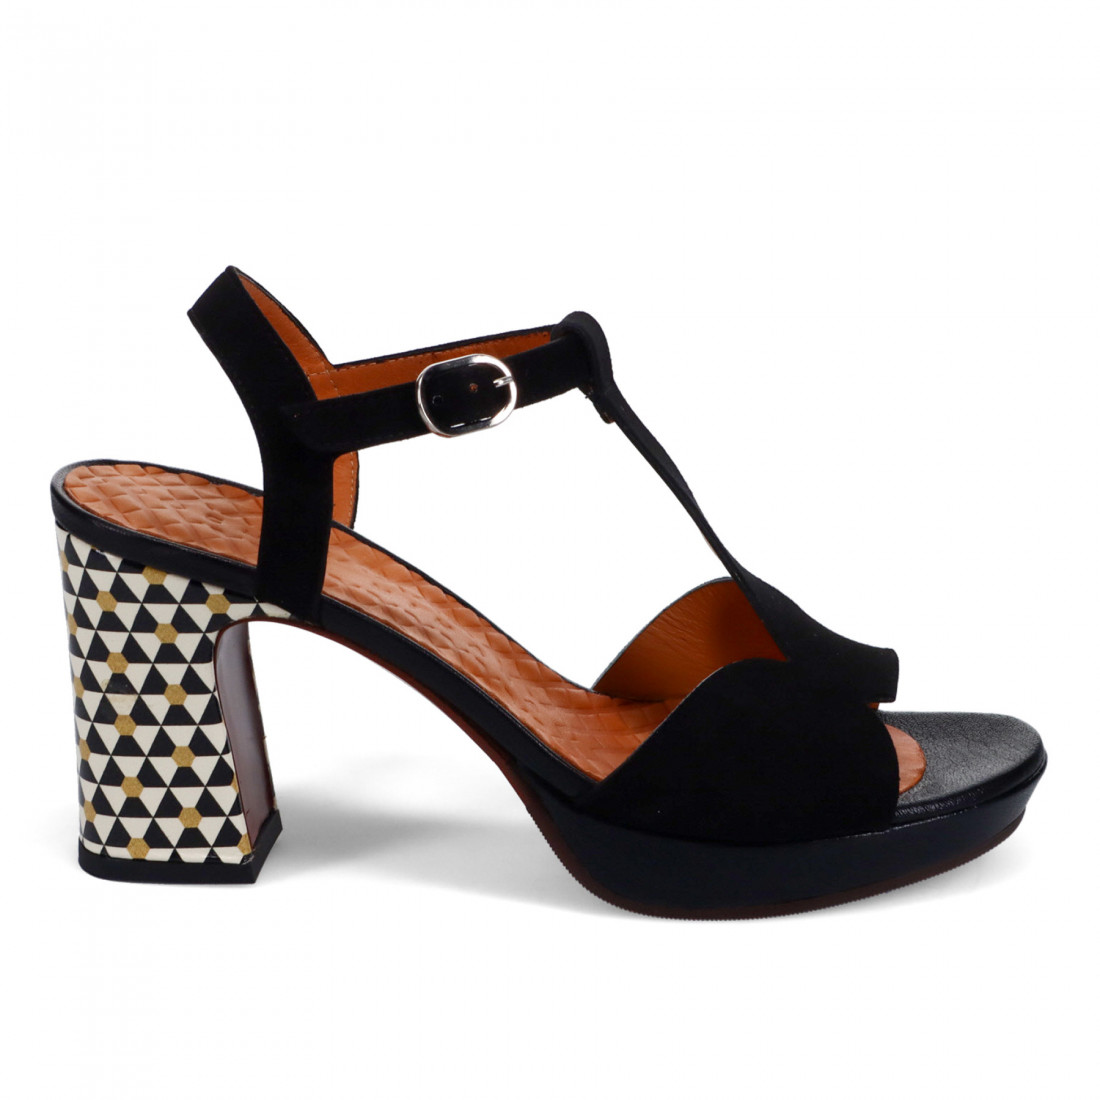 Chie Mihara Kegg sandals in black suede with printed heel